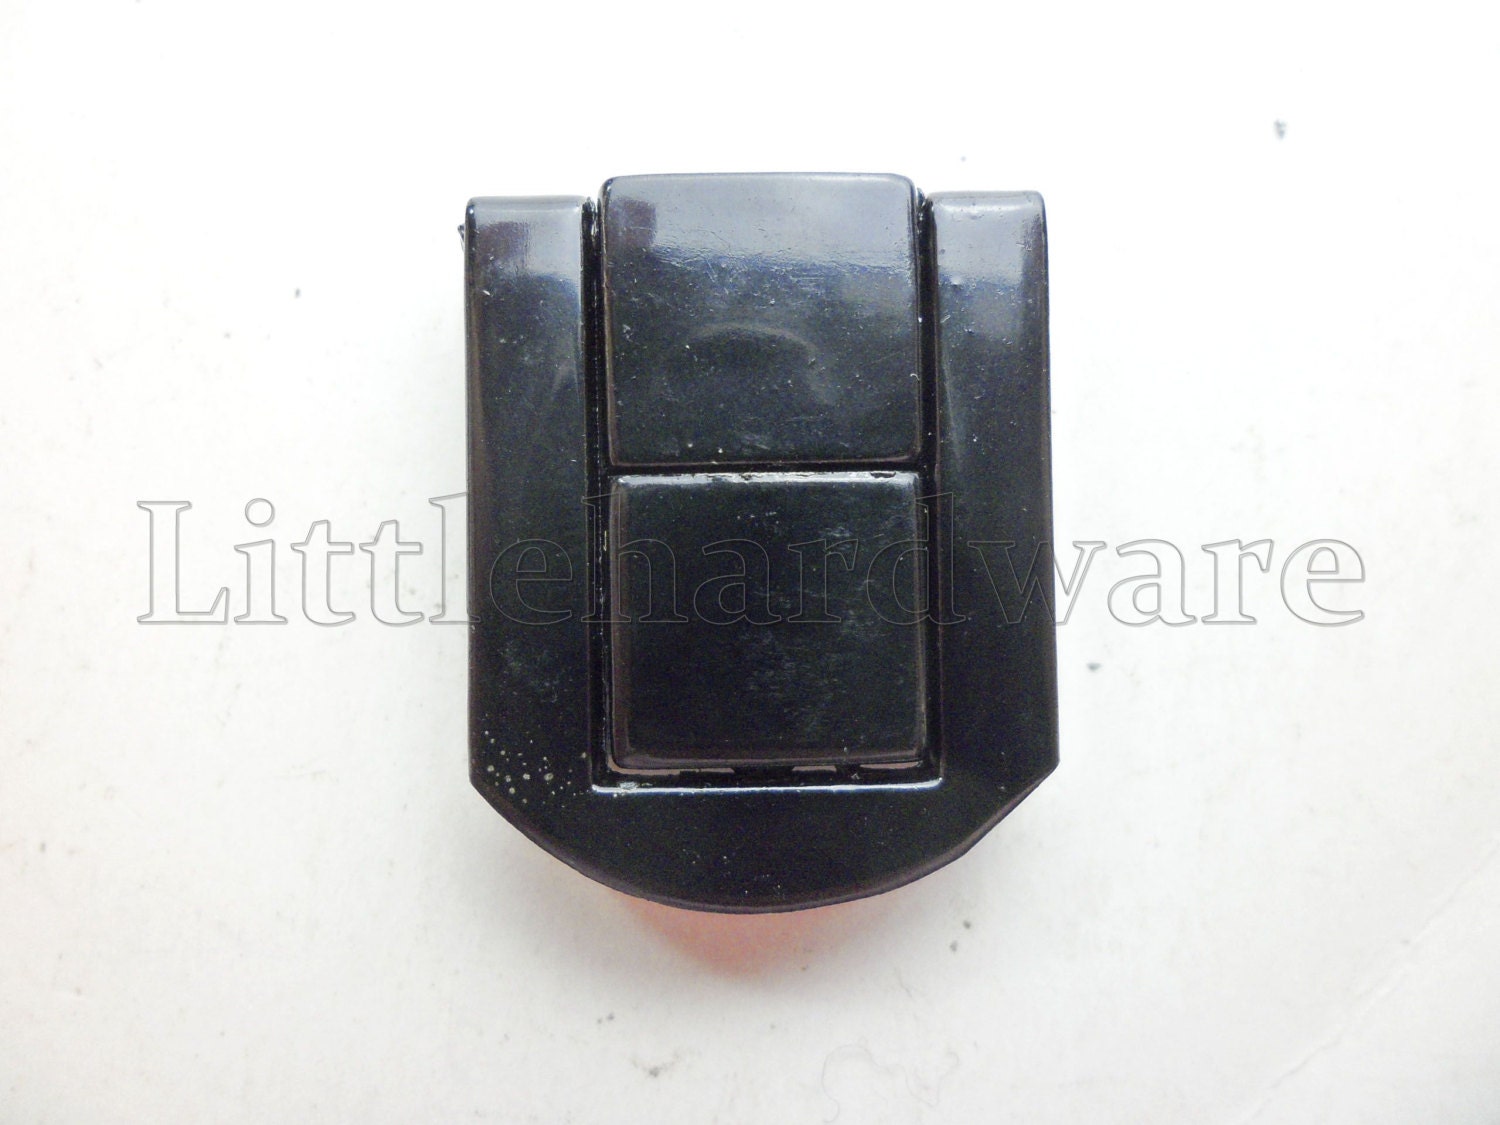 LK-25 Jewelry Box Lock